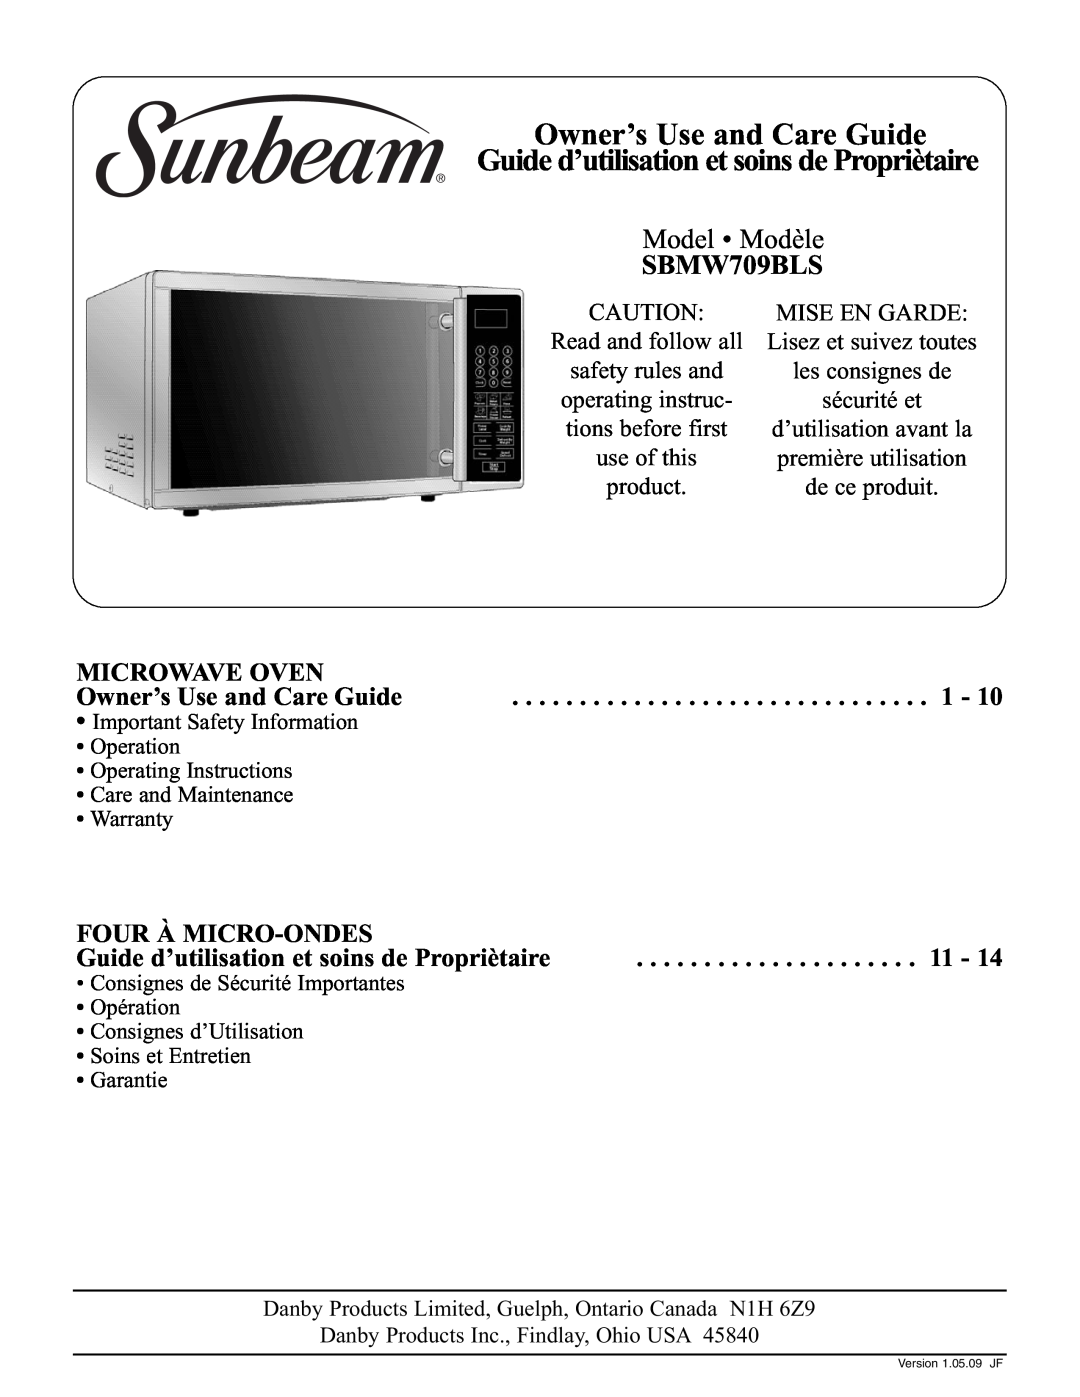 Sunbeam SBMW709BLS warranty Owner’s Use and Care Guide, Guide d’utilisation et soins de Propriètaire, Model Modèle 